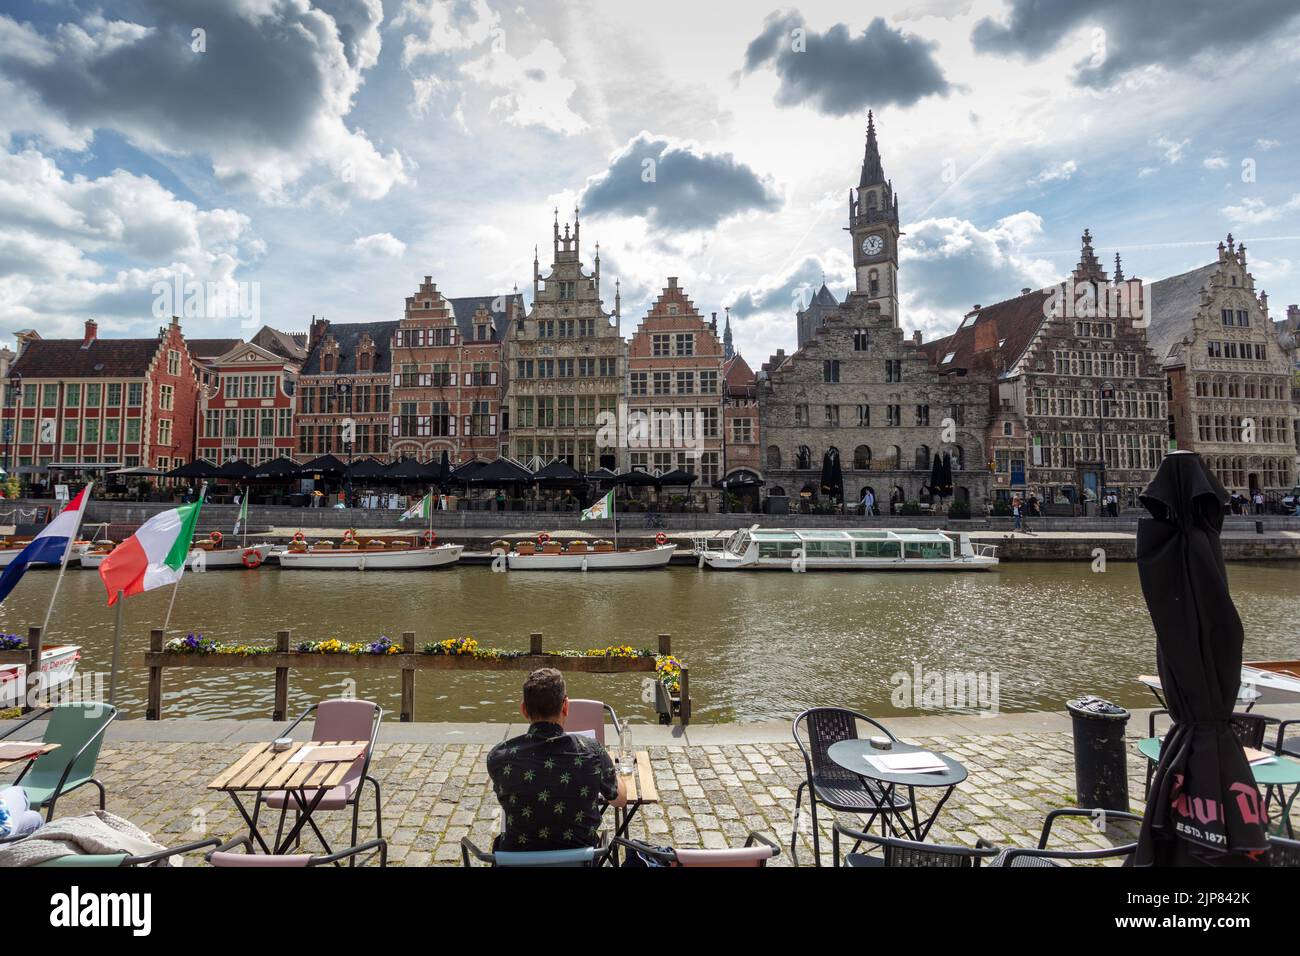 Die historische mittelalterliche Stadt Gent mit Blick auf Korenlei und Graslei Kai im Fluss Lys. Belgien. Stockfoto